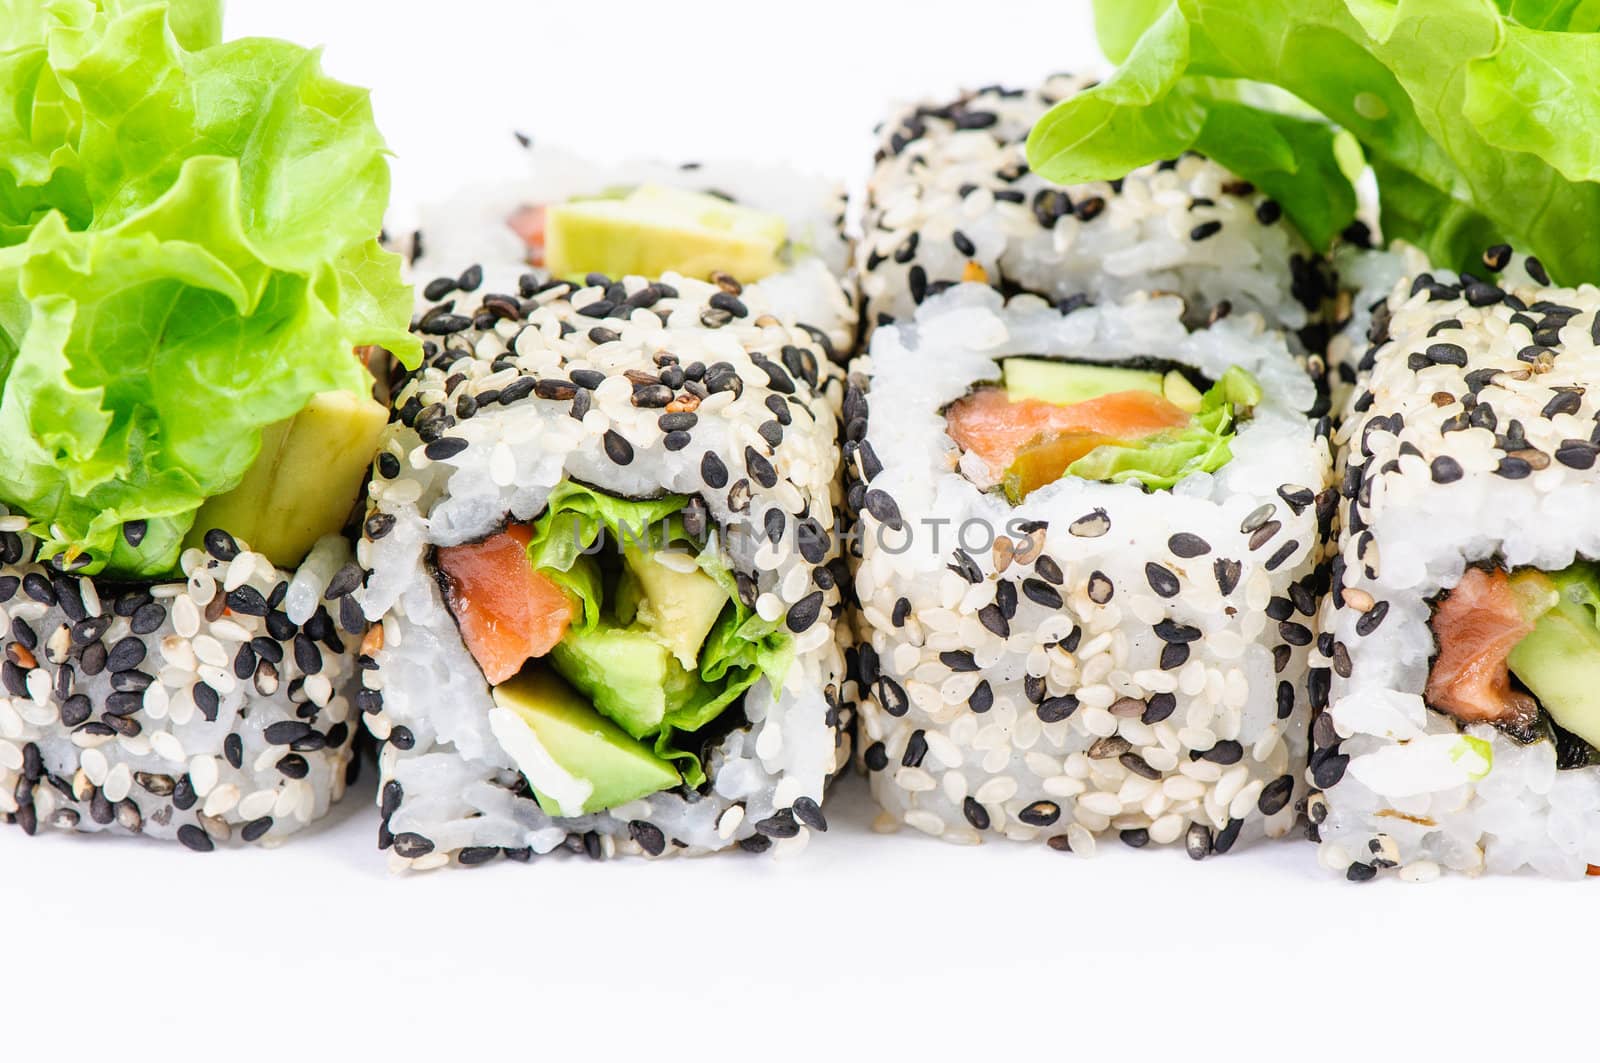 Sushi set with leawes salad on white background